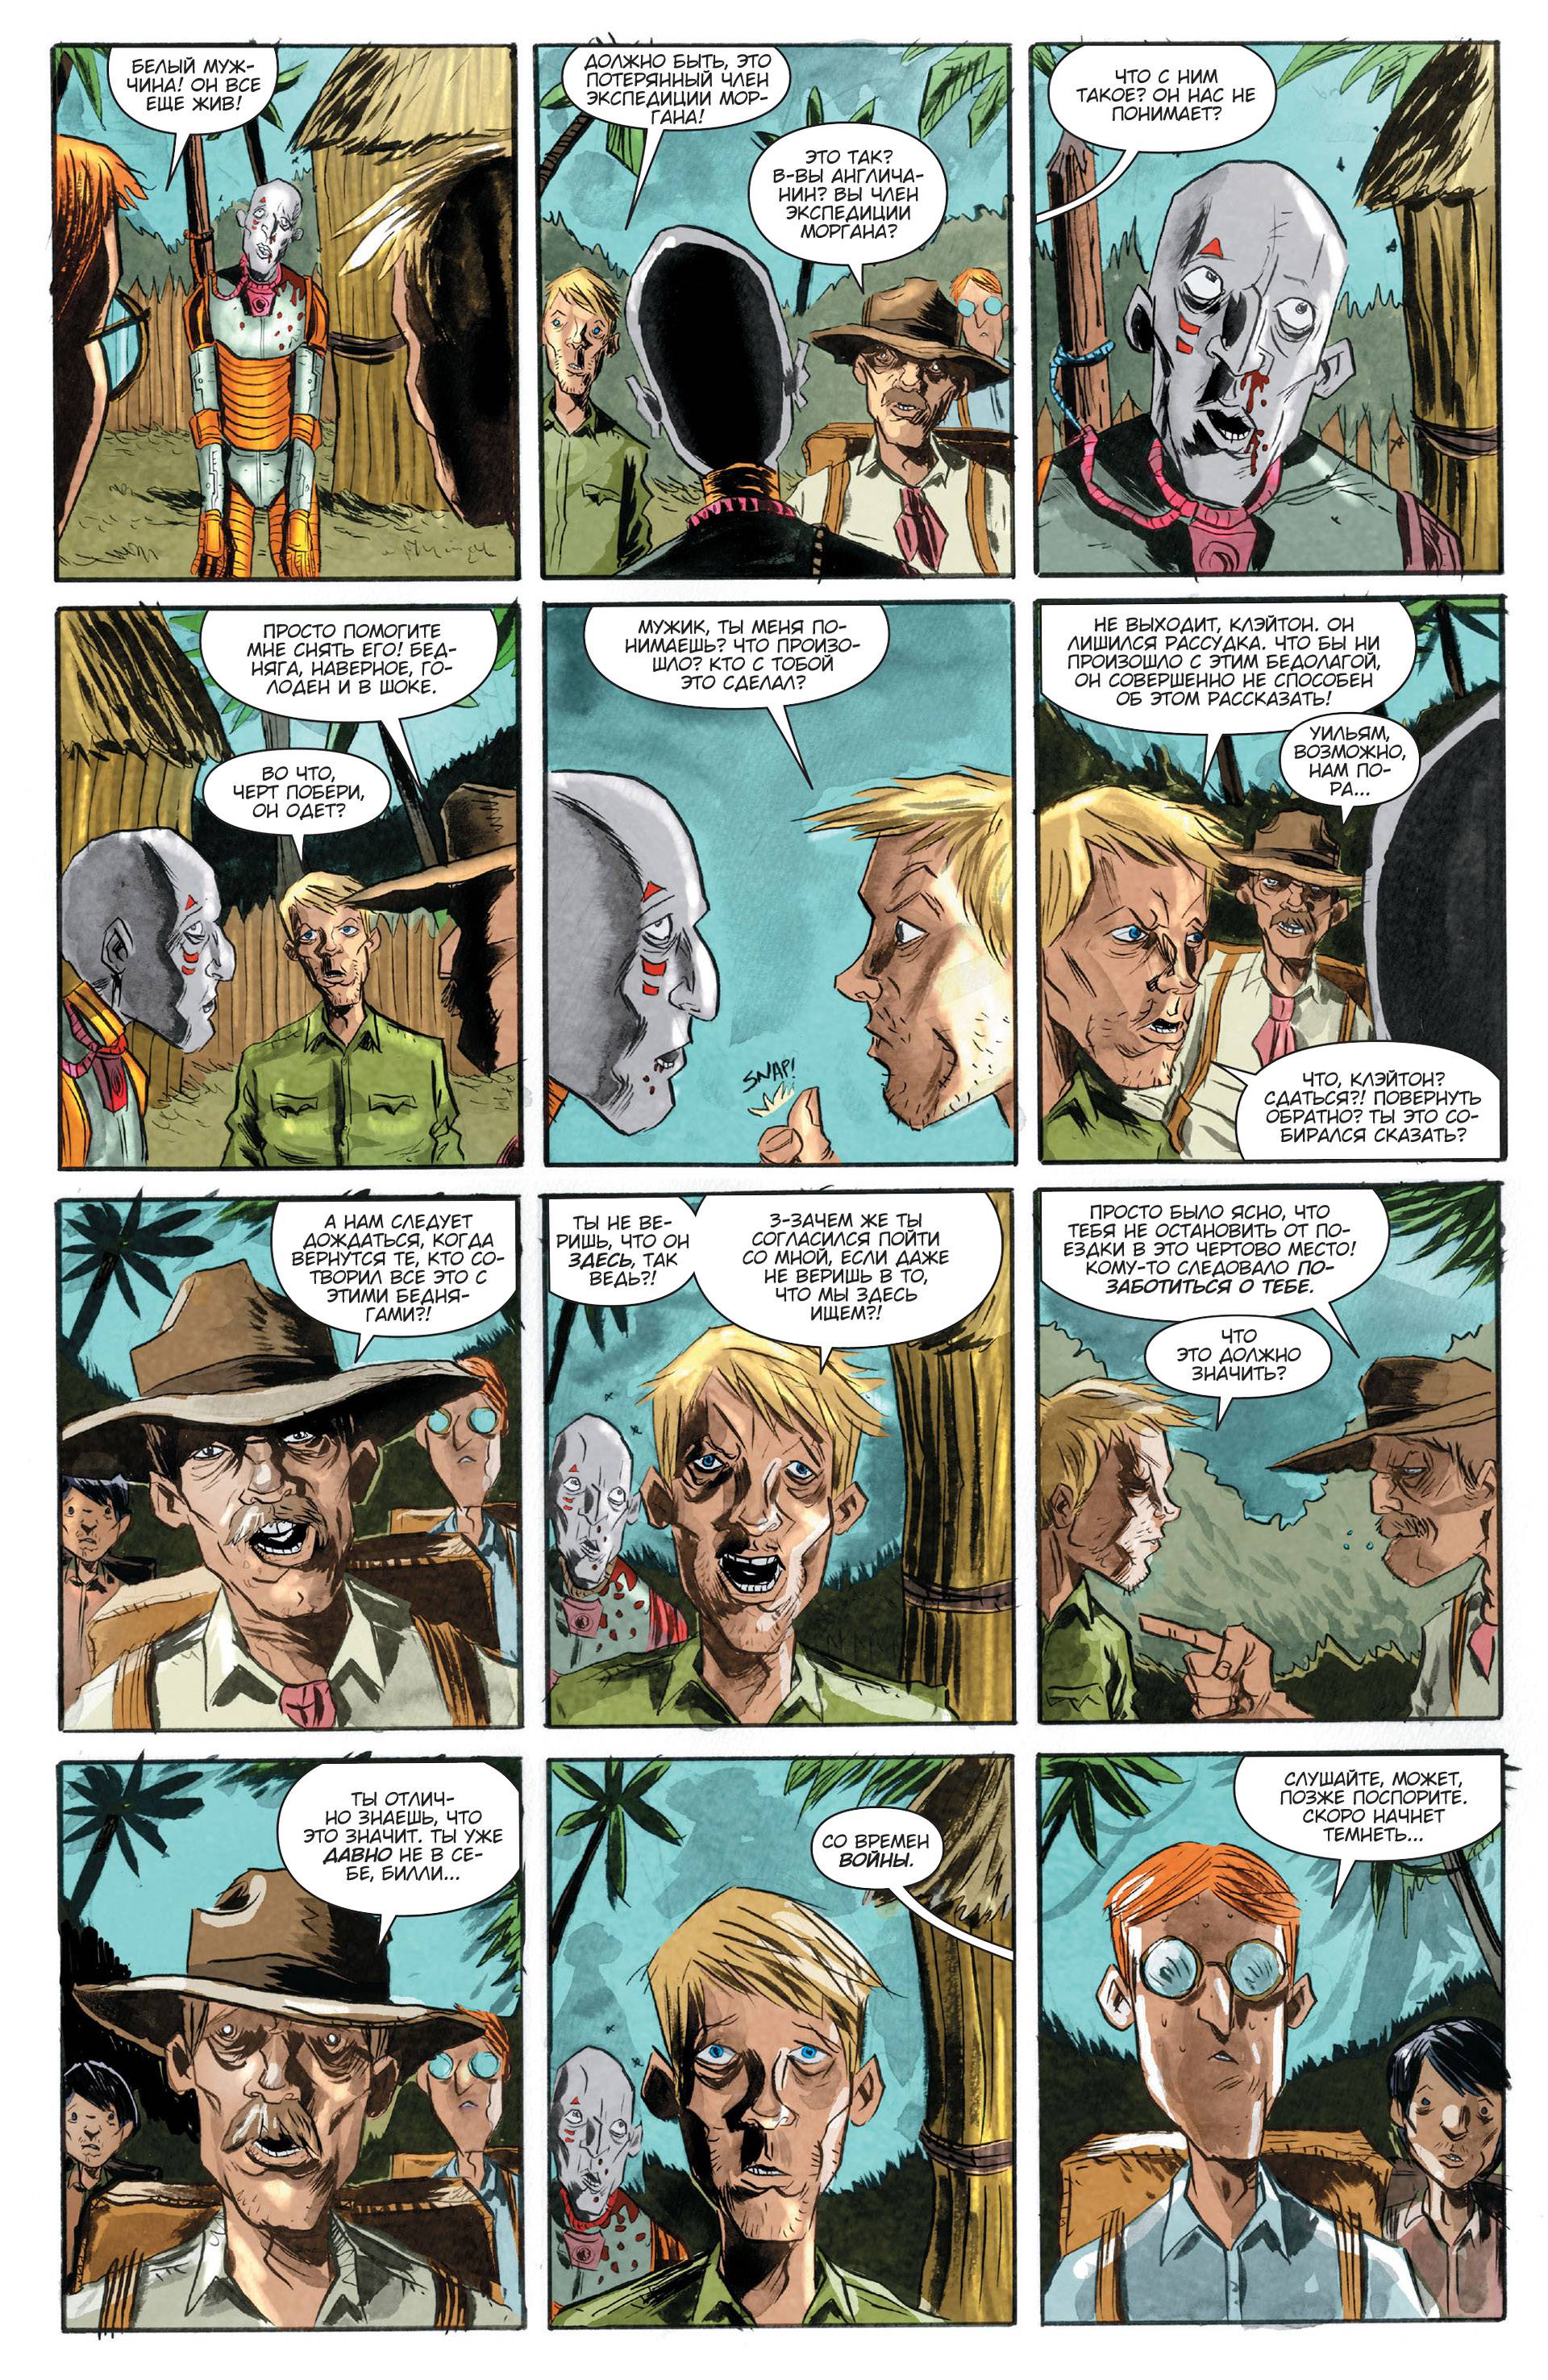 Триллиум №1 (Trillium #1) - страница 24 - читать комикс онлайн бесплатно | UniComics